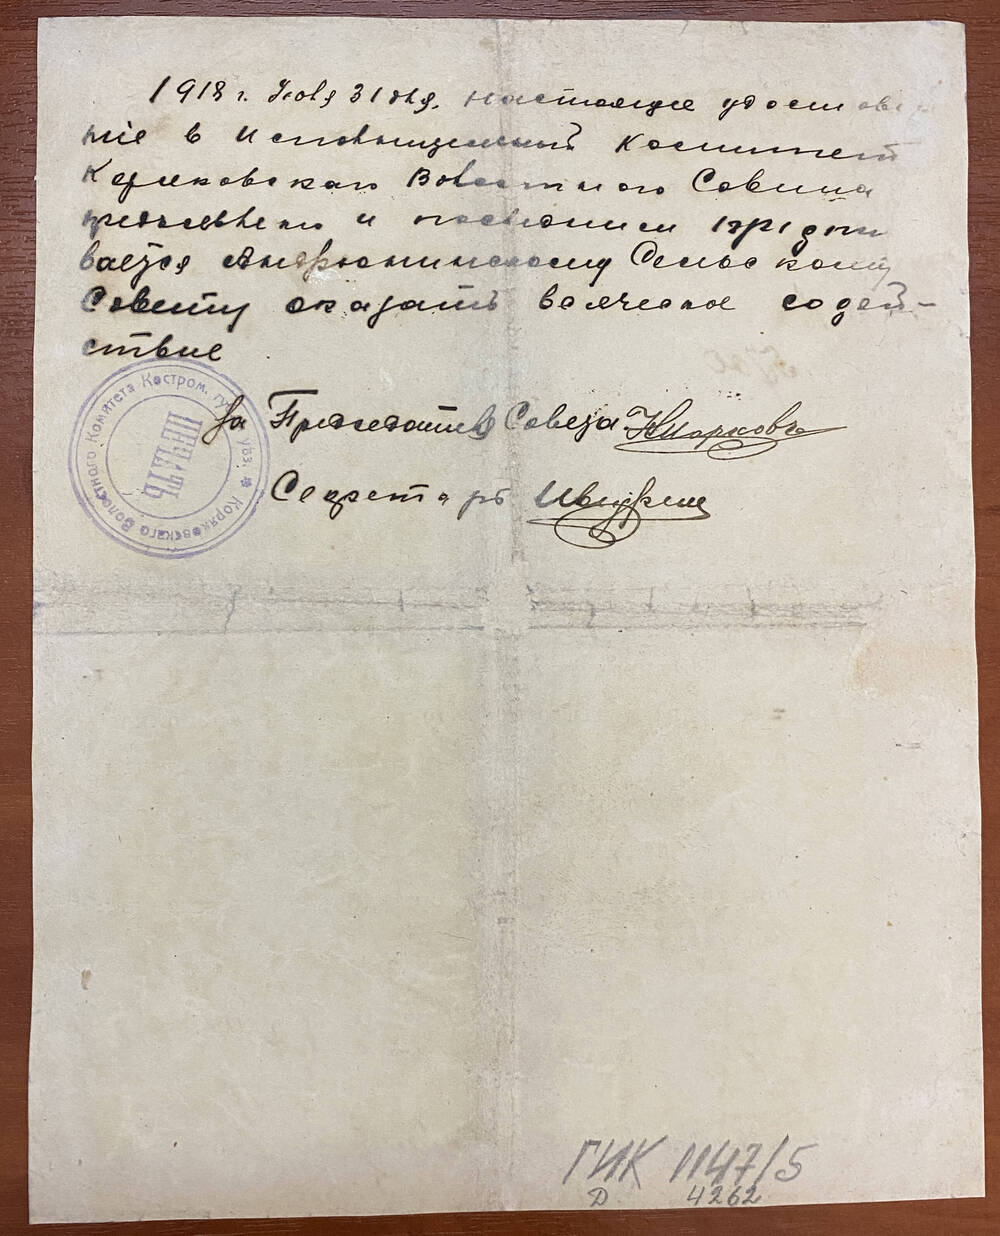 Удостоверение № 5700 от 19 июля 1918 г. выдано нач. милиции 2-й части города Костромы А. М. Айзину, в том, что ему поручено ведение дела об убийстве. Две подписи